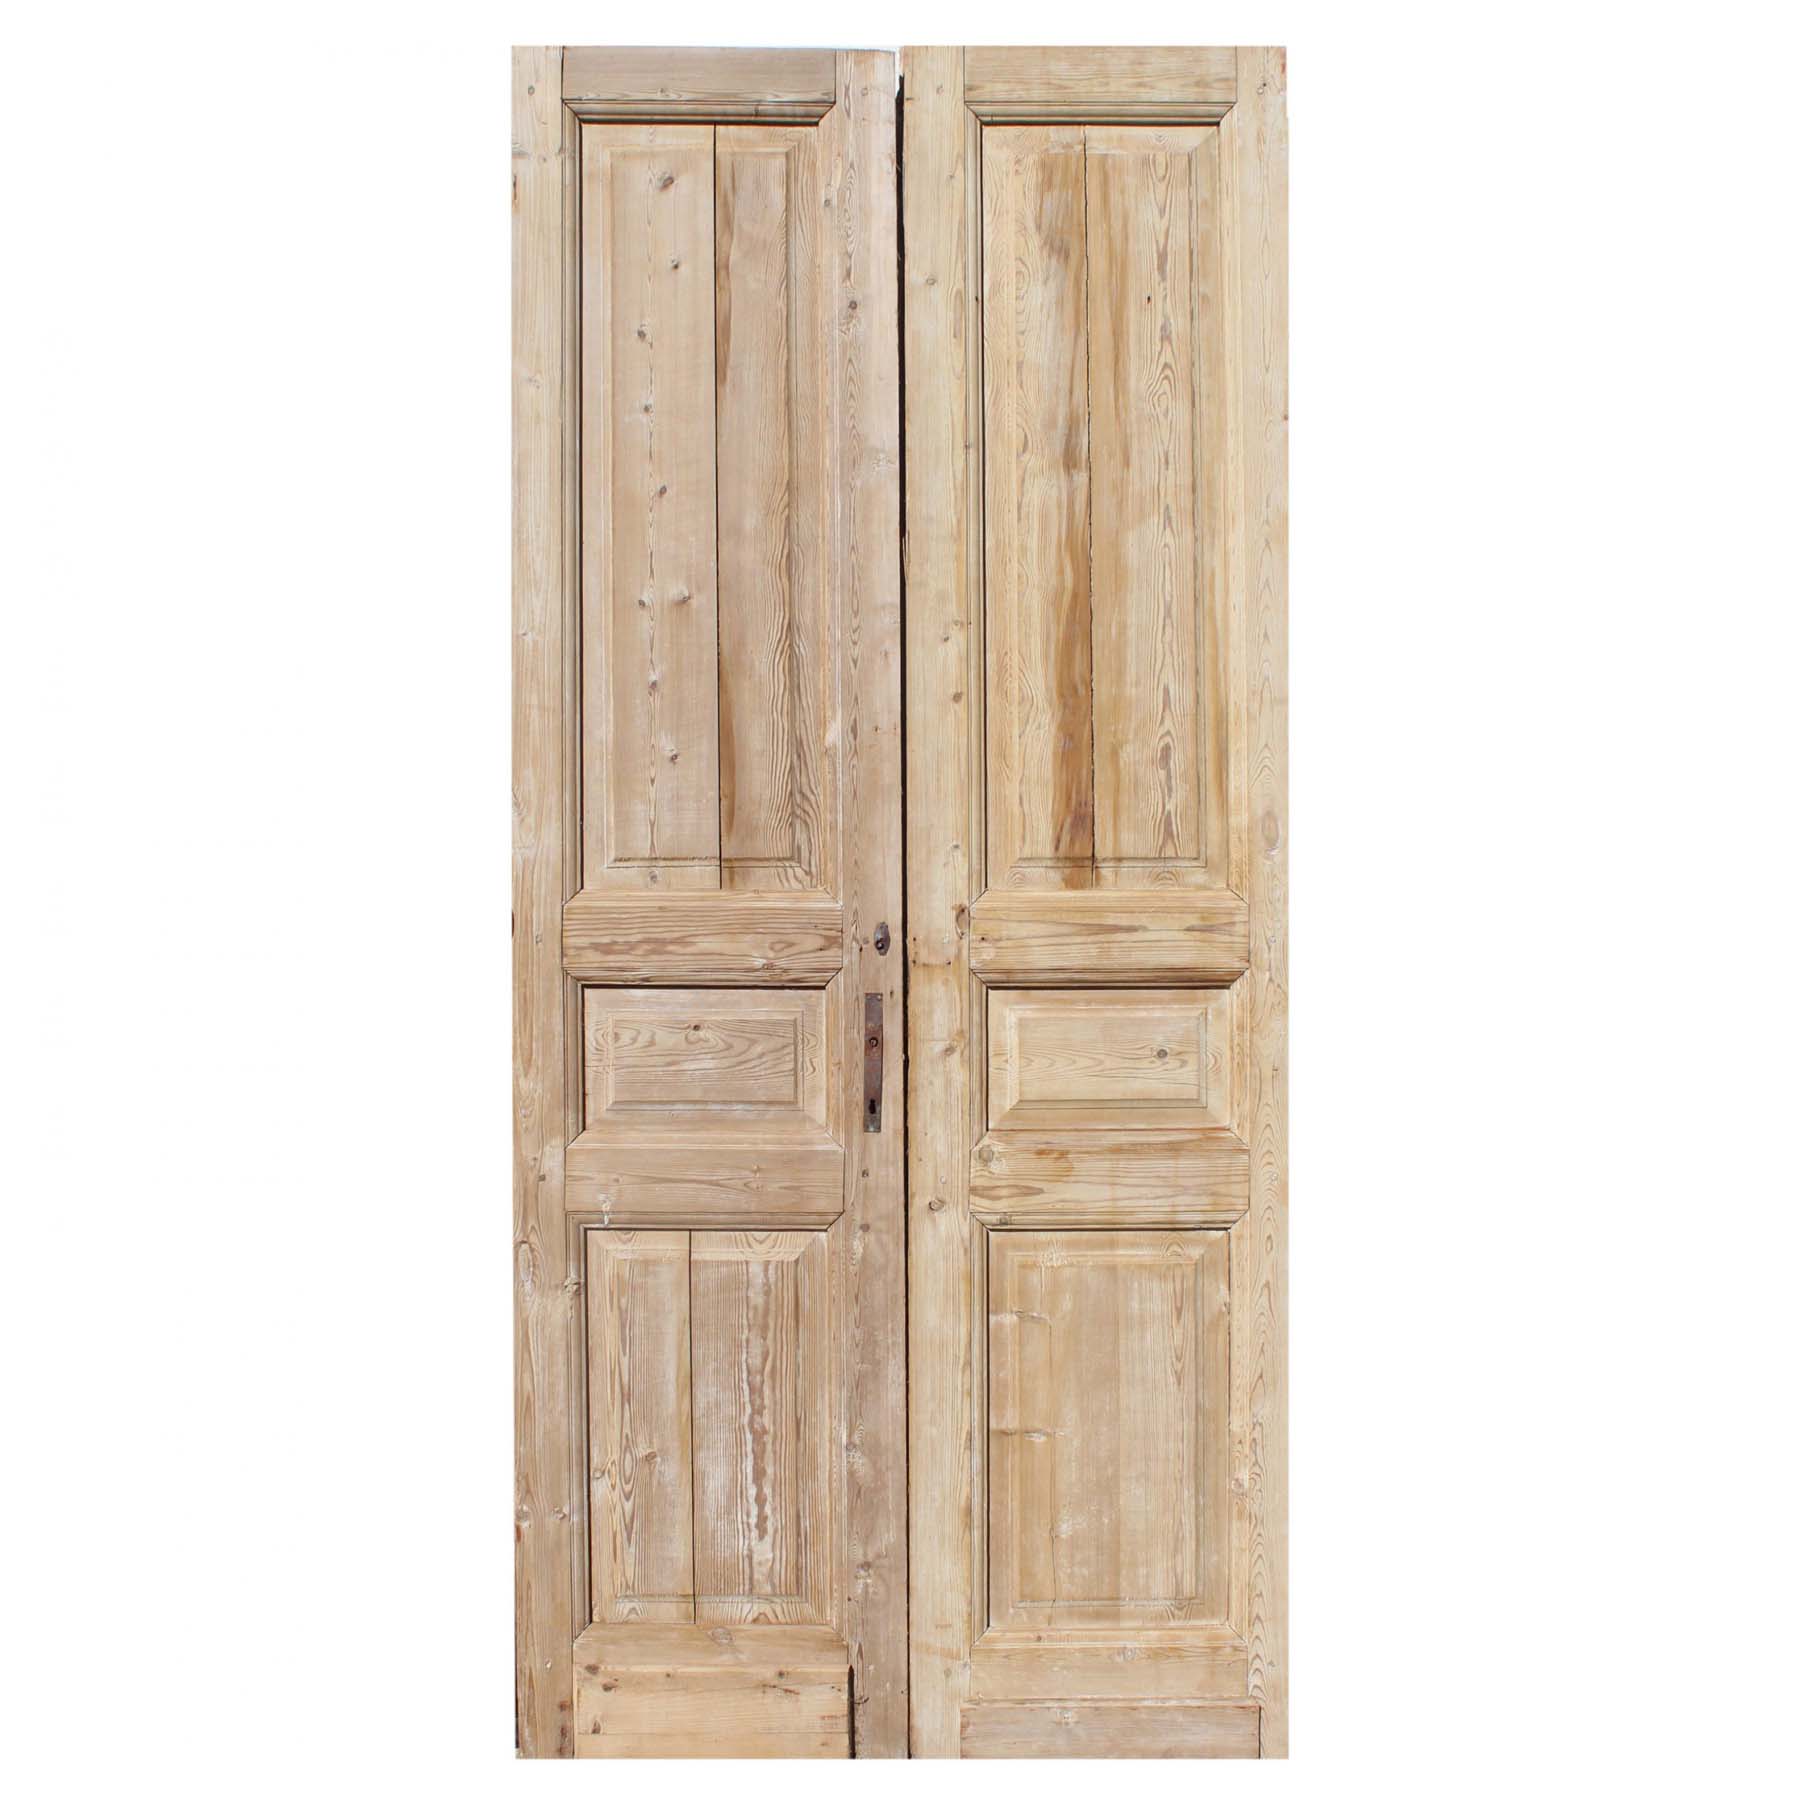 SOLD Pair of Antique 44” Doors-69807